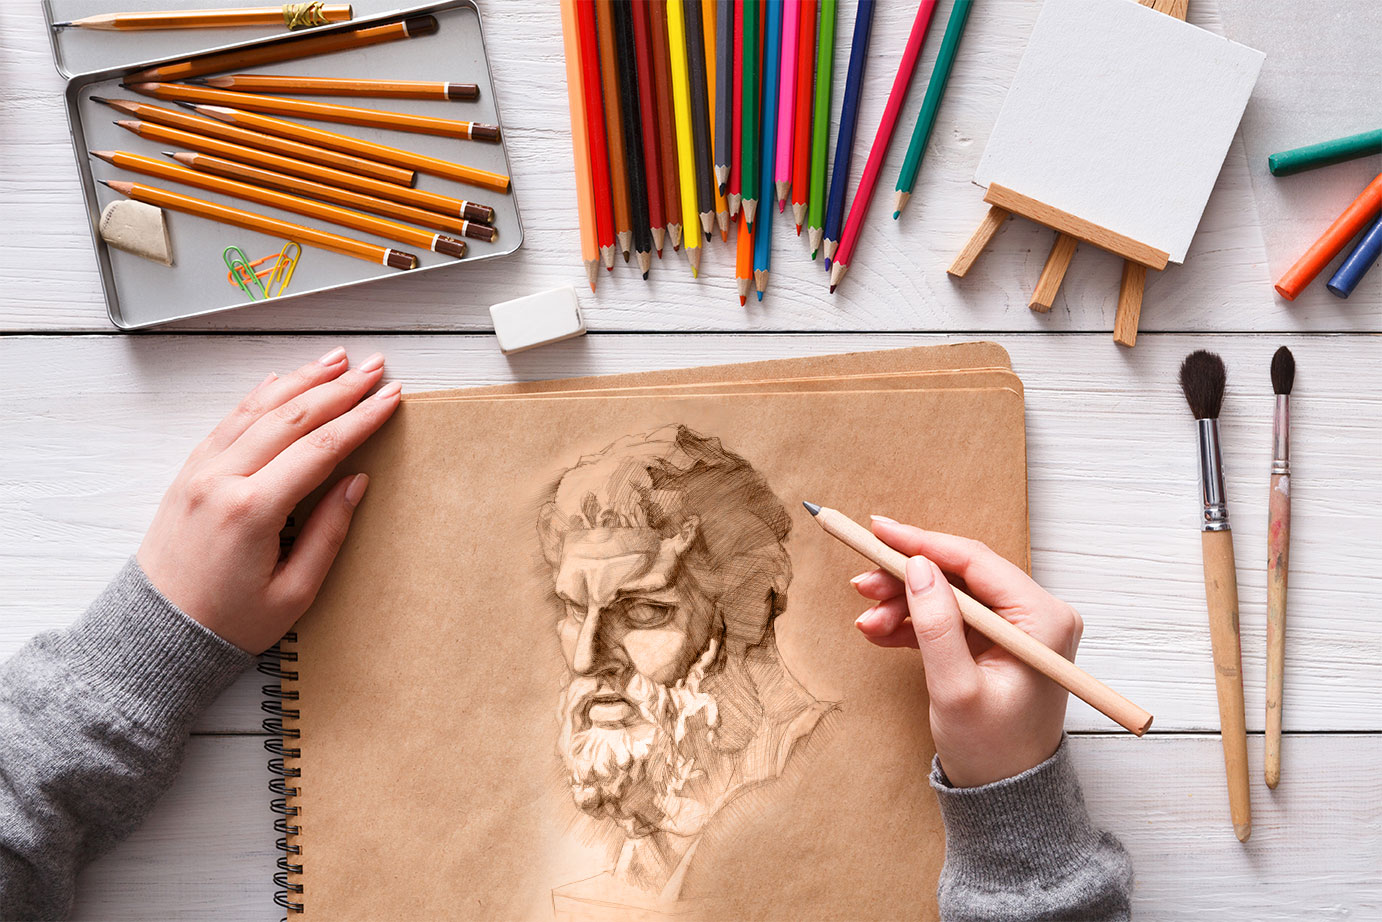 110+ крутых уроков рисования онлайн в 2021 (для начинающих)